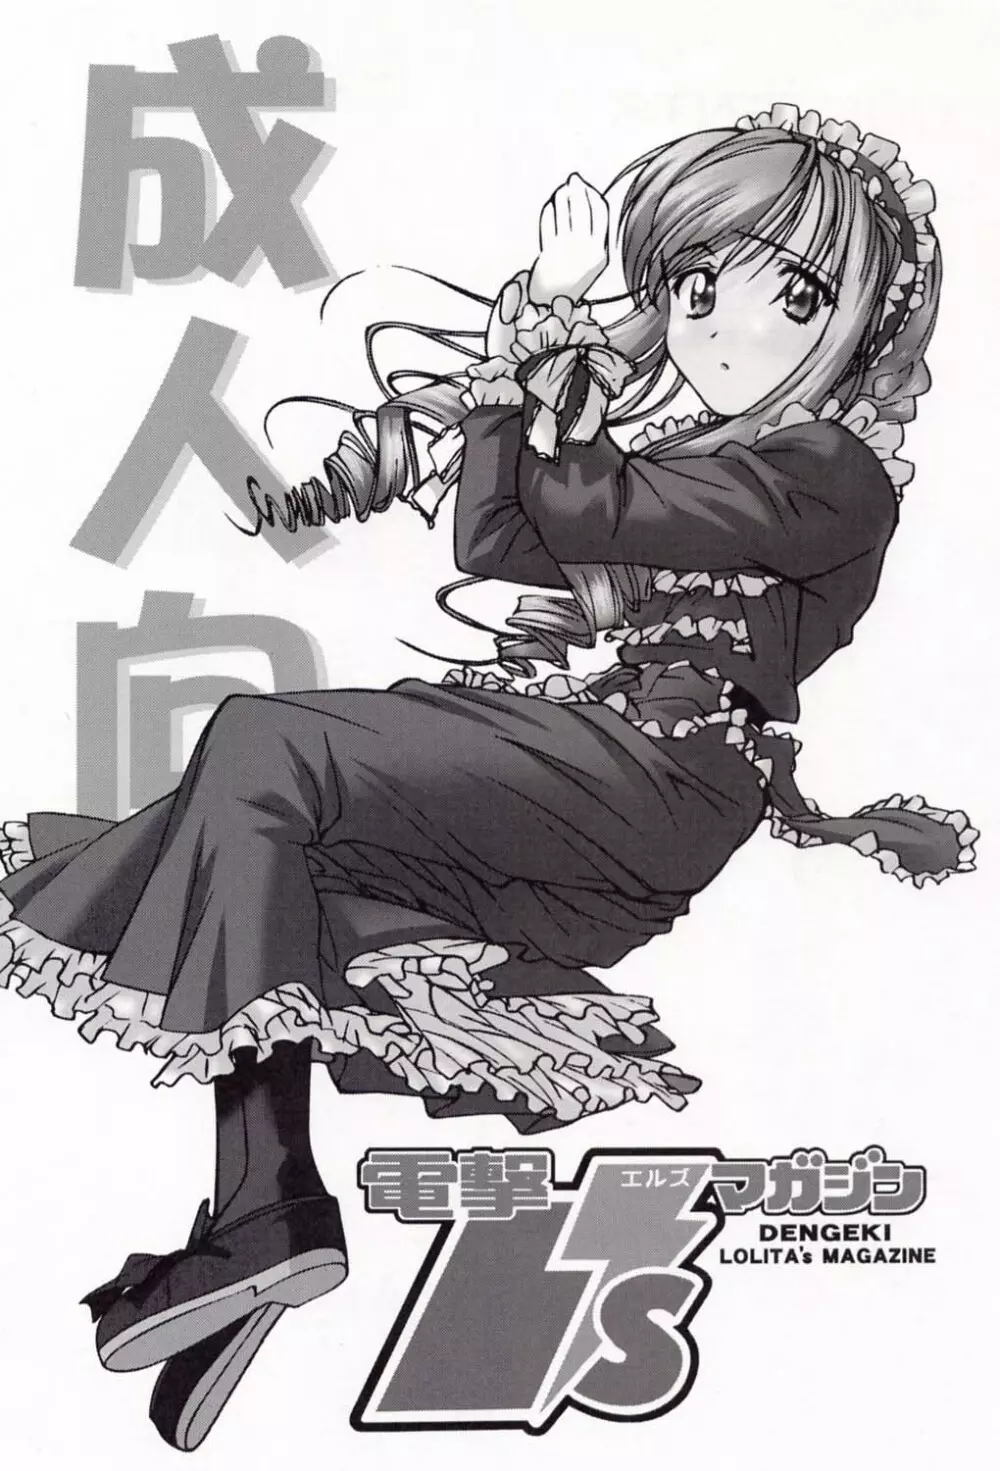 電撃L'sマガジン Dengeki Lolita's Magazine - page2